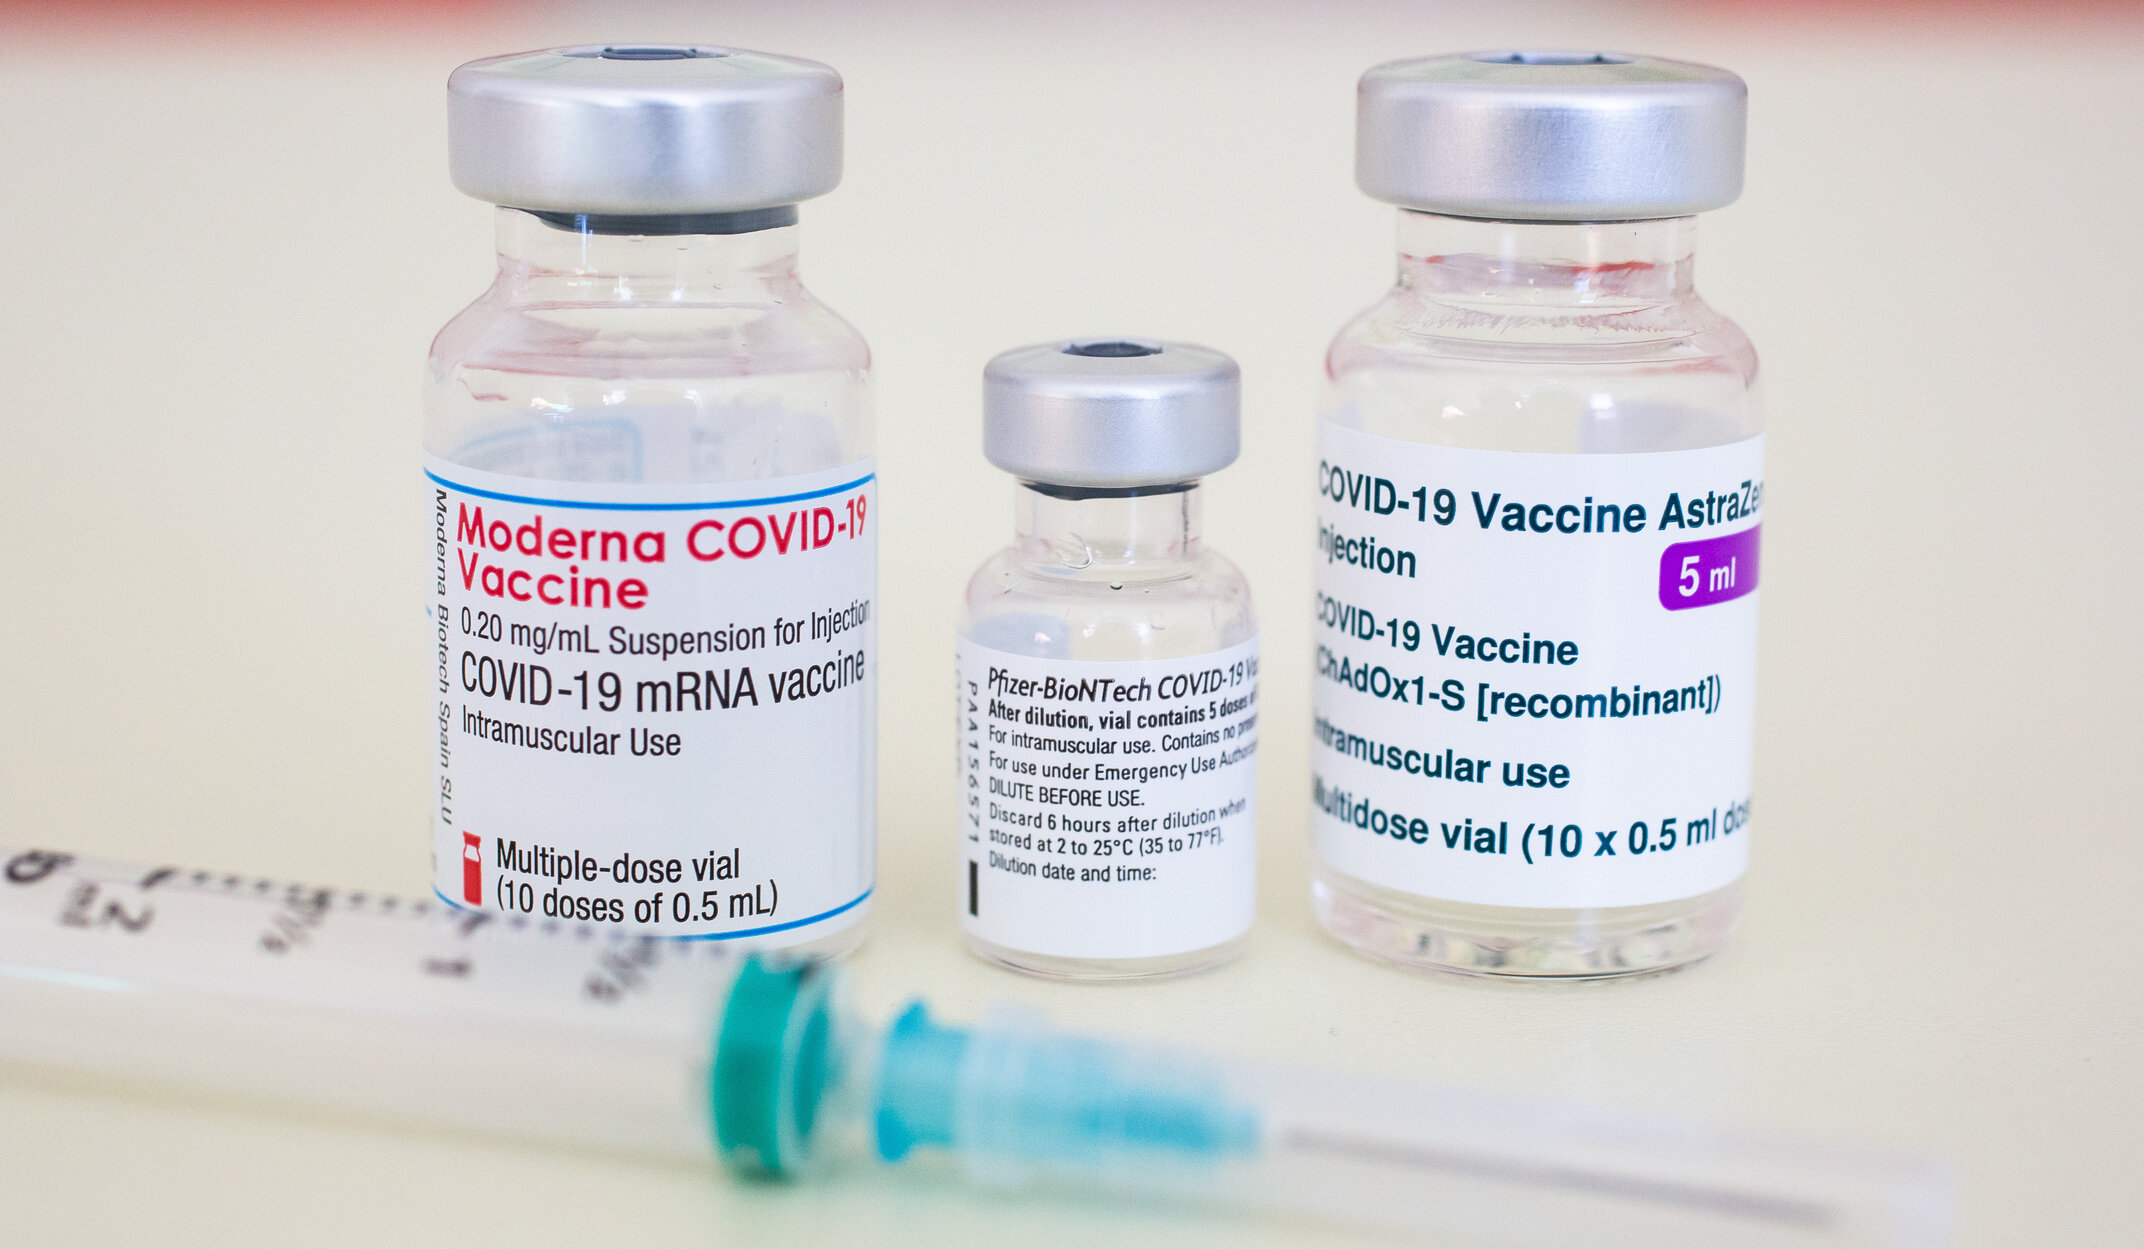 Nu toate vaccinurile anti-Covid sunt la fel. Beneficiile sunt diferite și niciunul nu este eficient 100% împotriva formelor severe sau deceselor